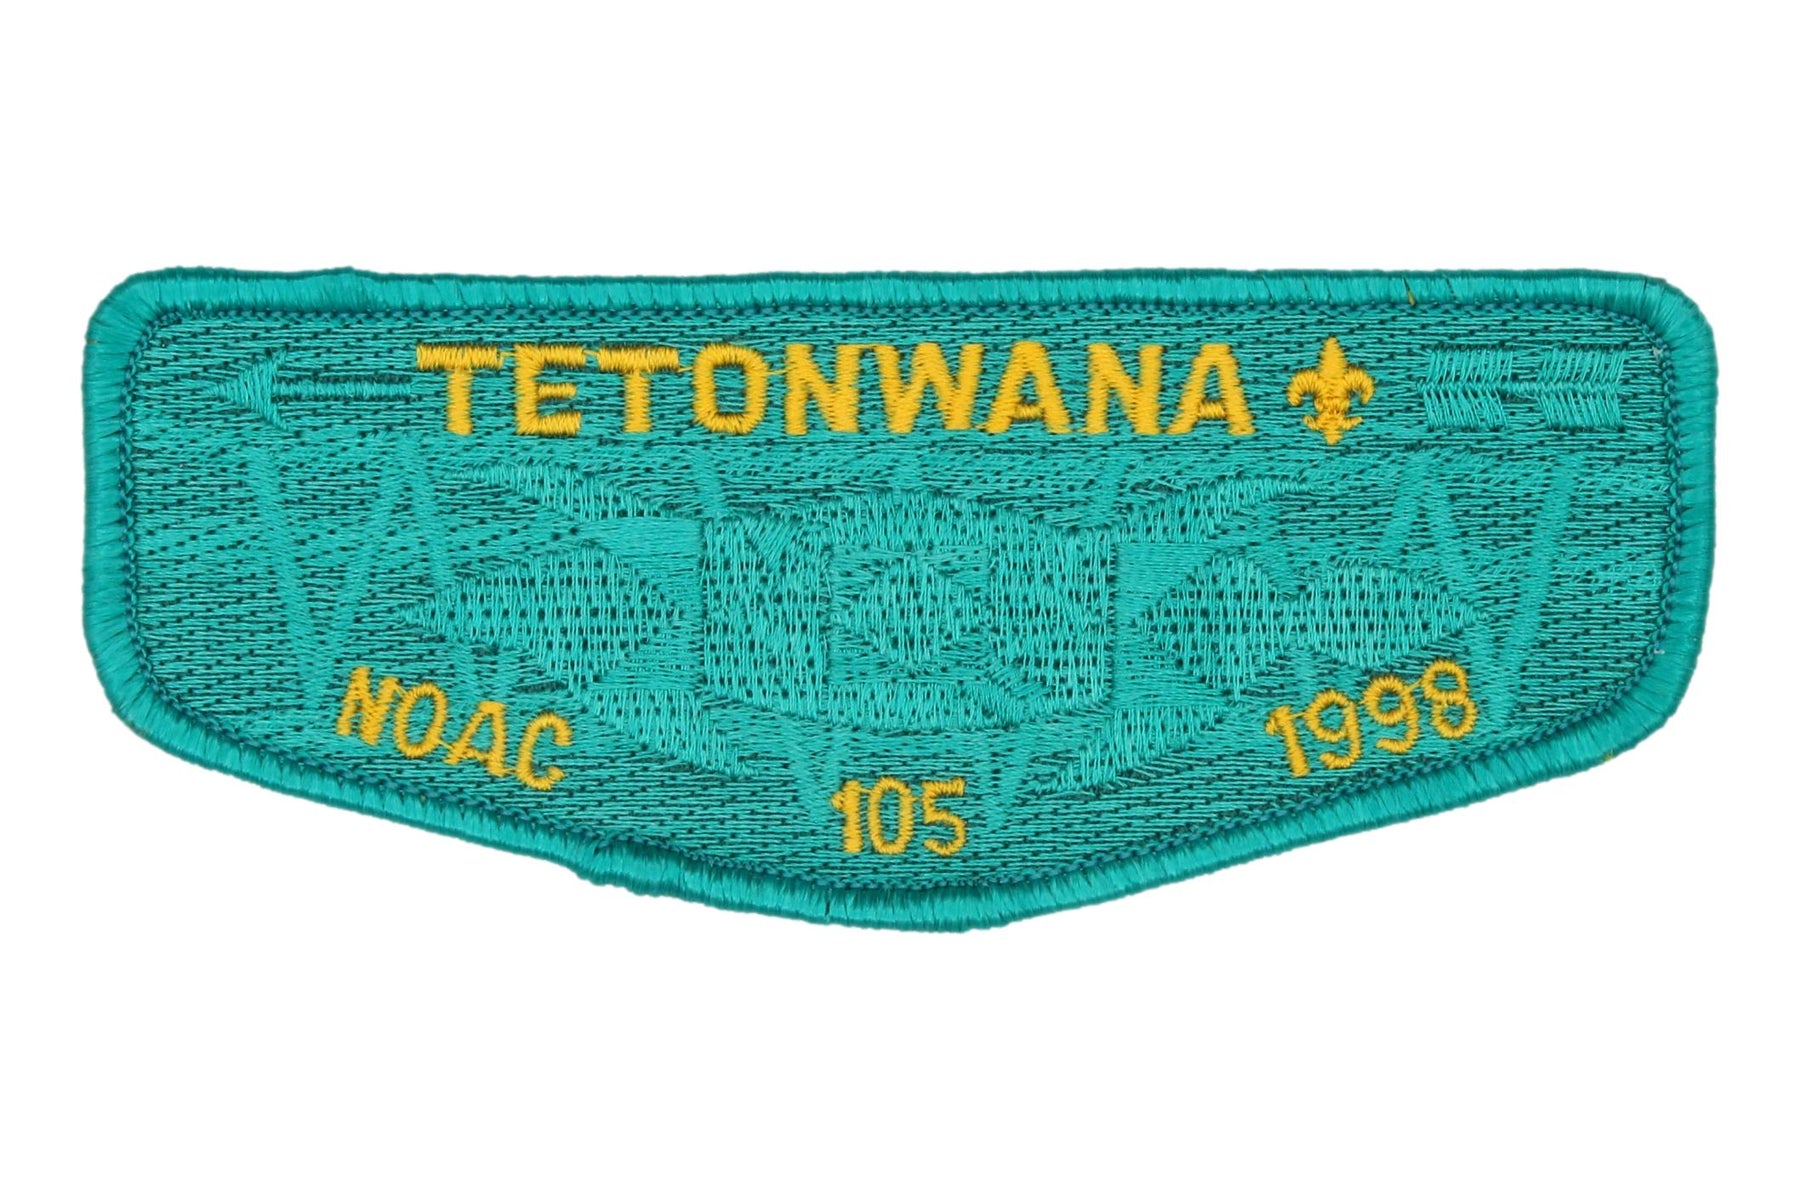 Lodge 105 Tetonwana Flap